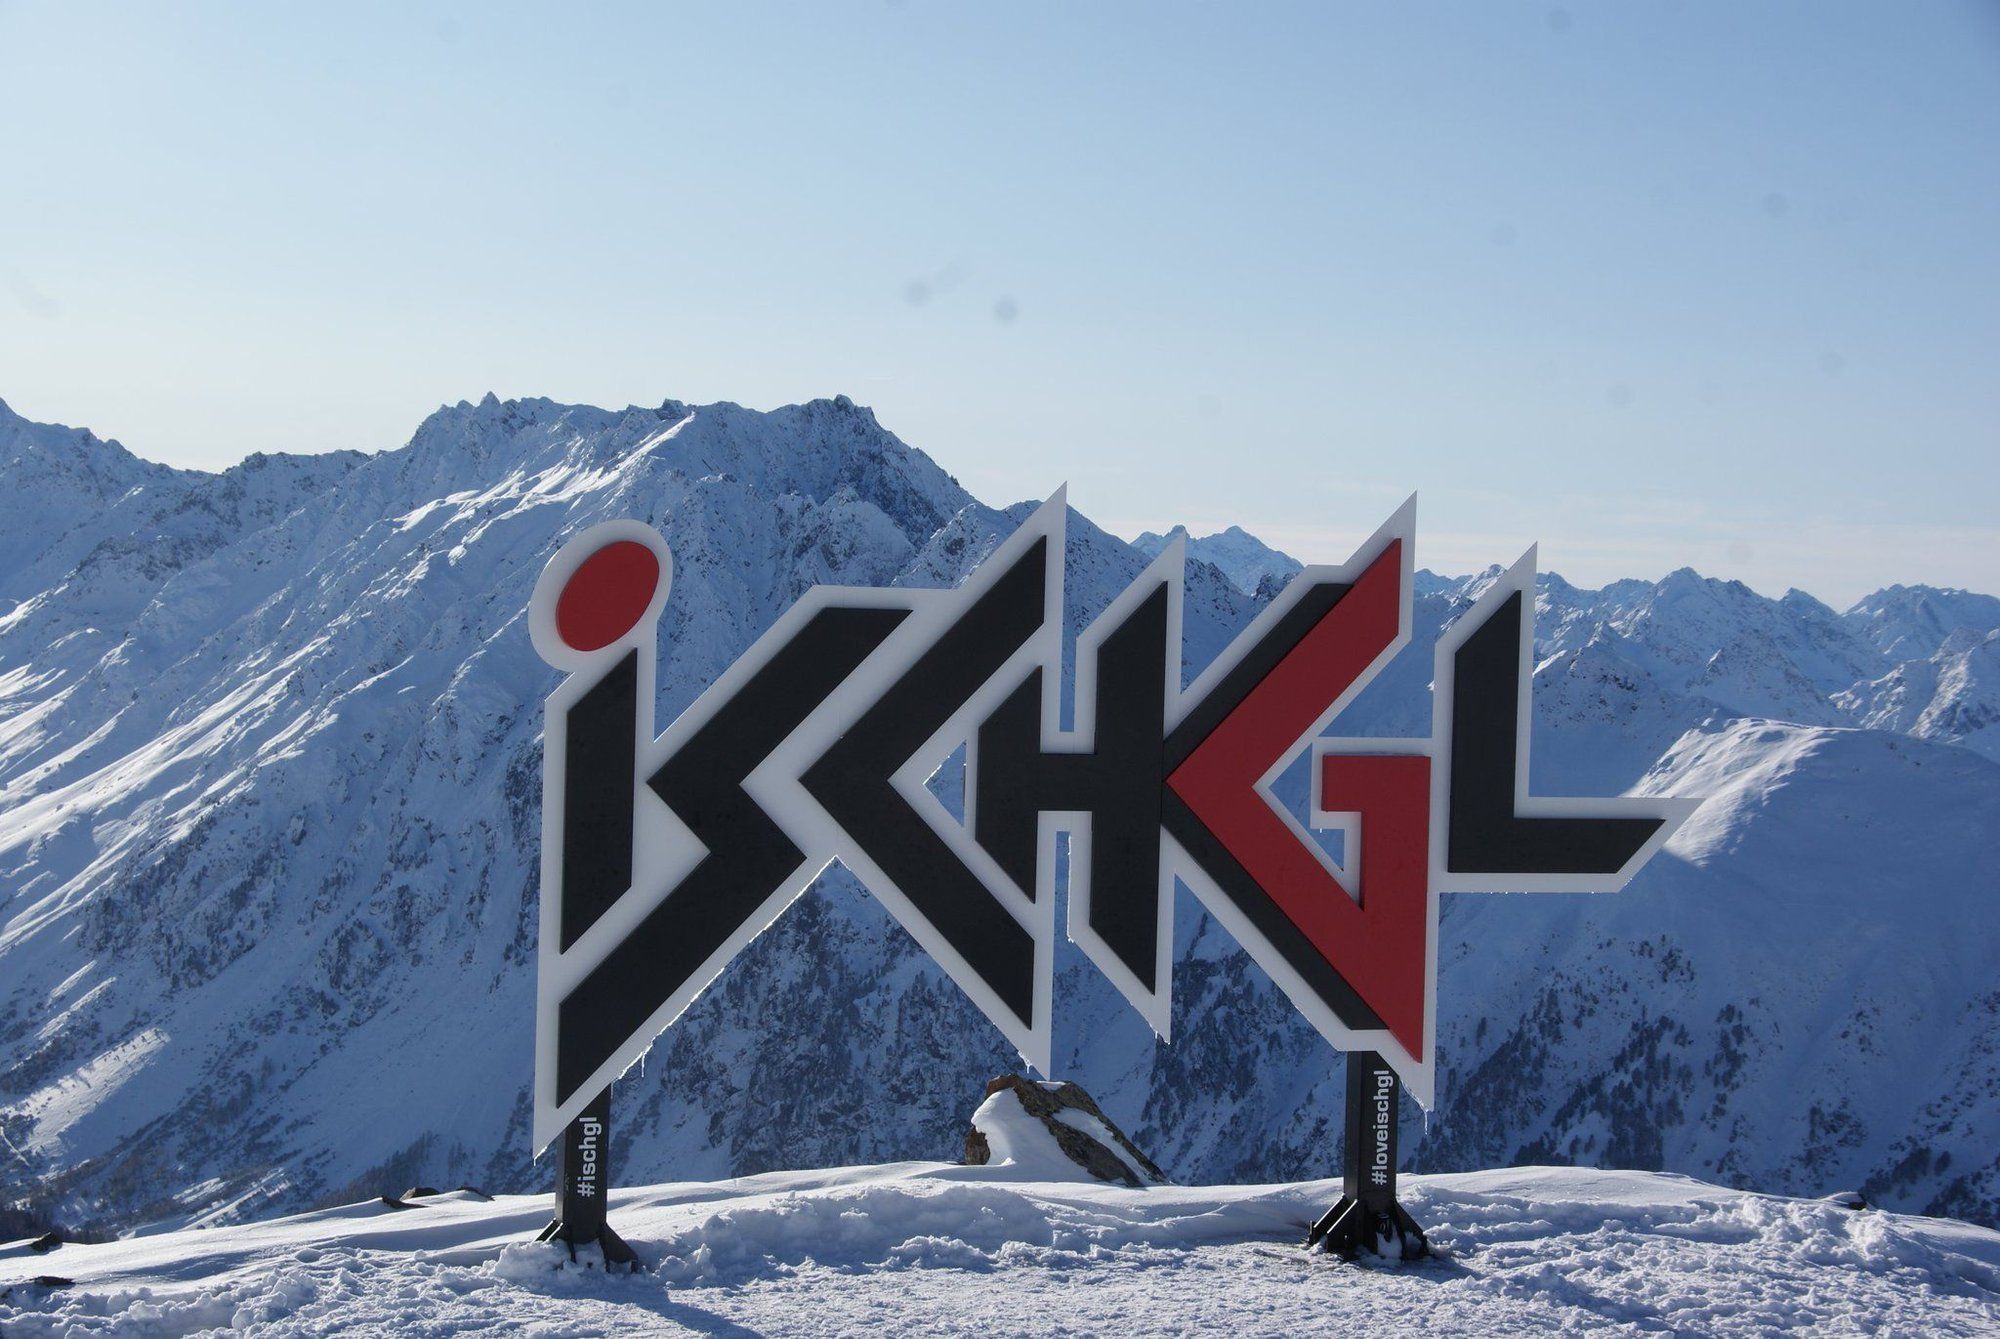 Bild zeigt den rot-schwarzen "Ischgl"-Schriftzug in einer Schnee- und Berglandschaft.